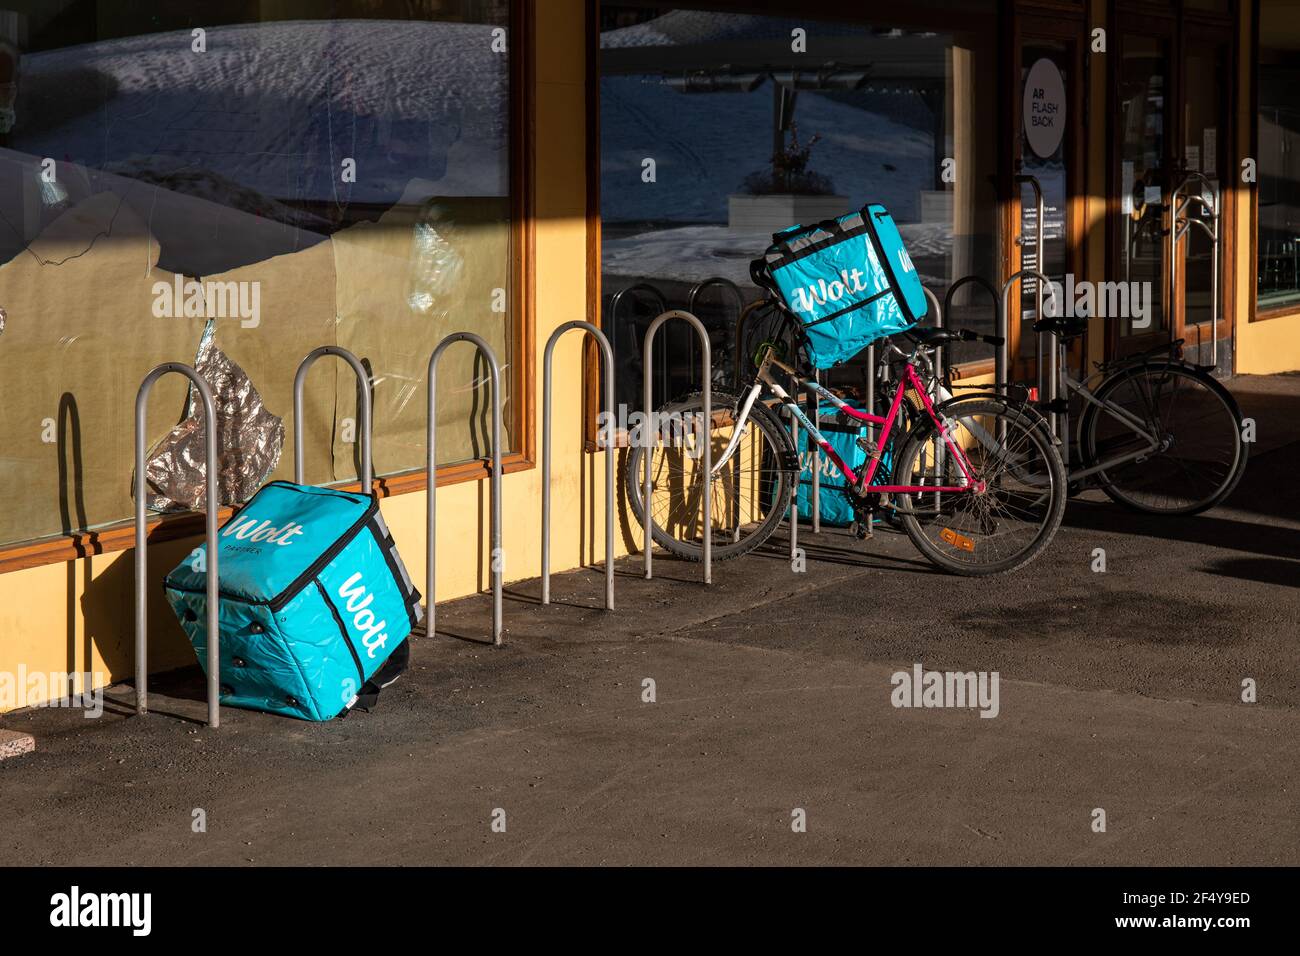 Gli zaini di consegna termica del corriere di cibo Wolt abbandonati in lasipalatsi plaza a Helsinki, Finlandia Foto Stock